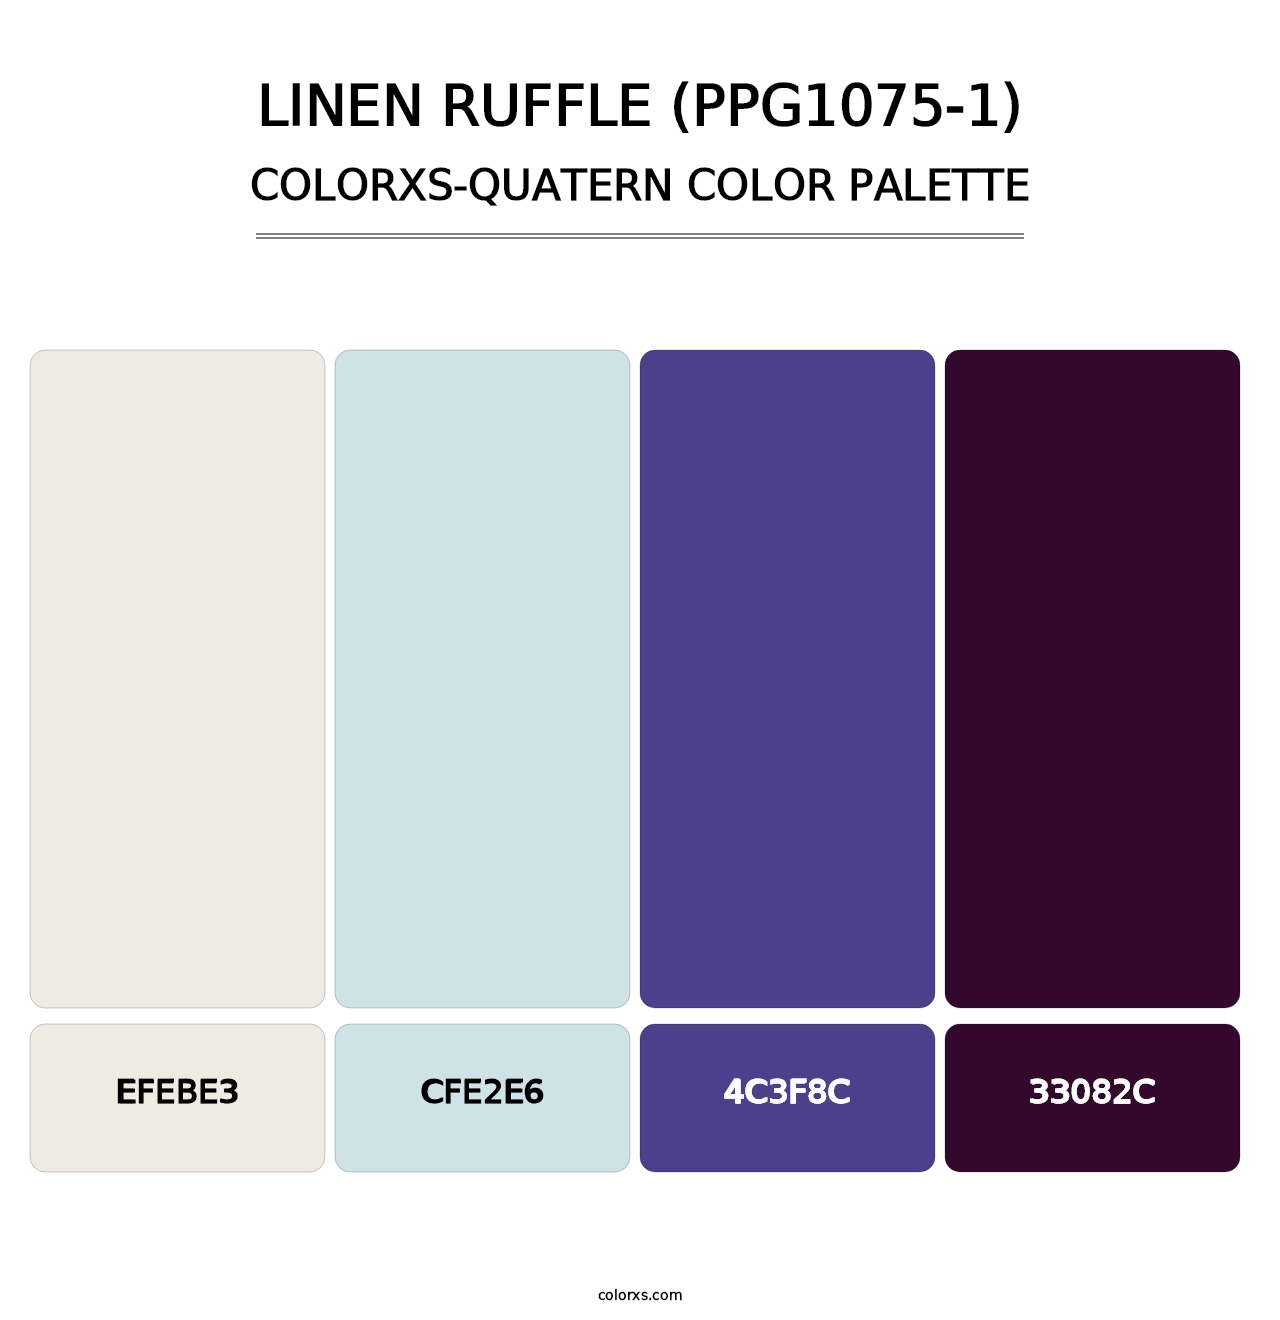 Linen Ruffle (PPG1075-1) - Colorxs Quatern Palette